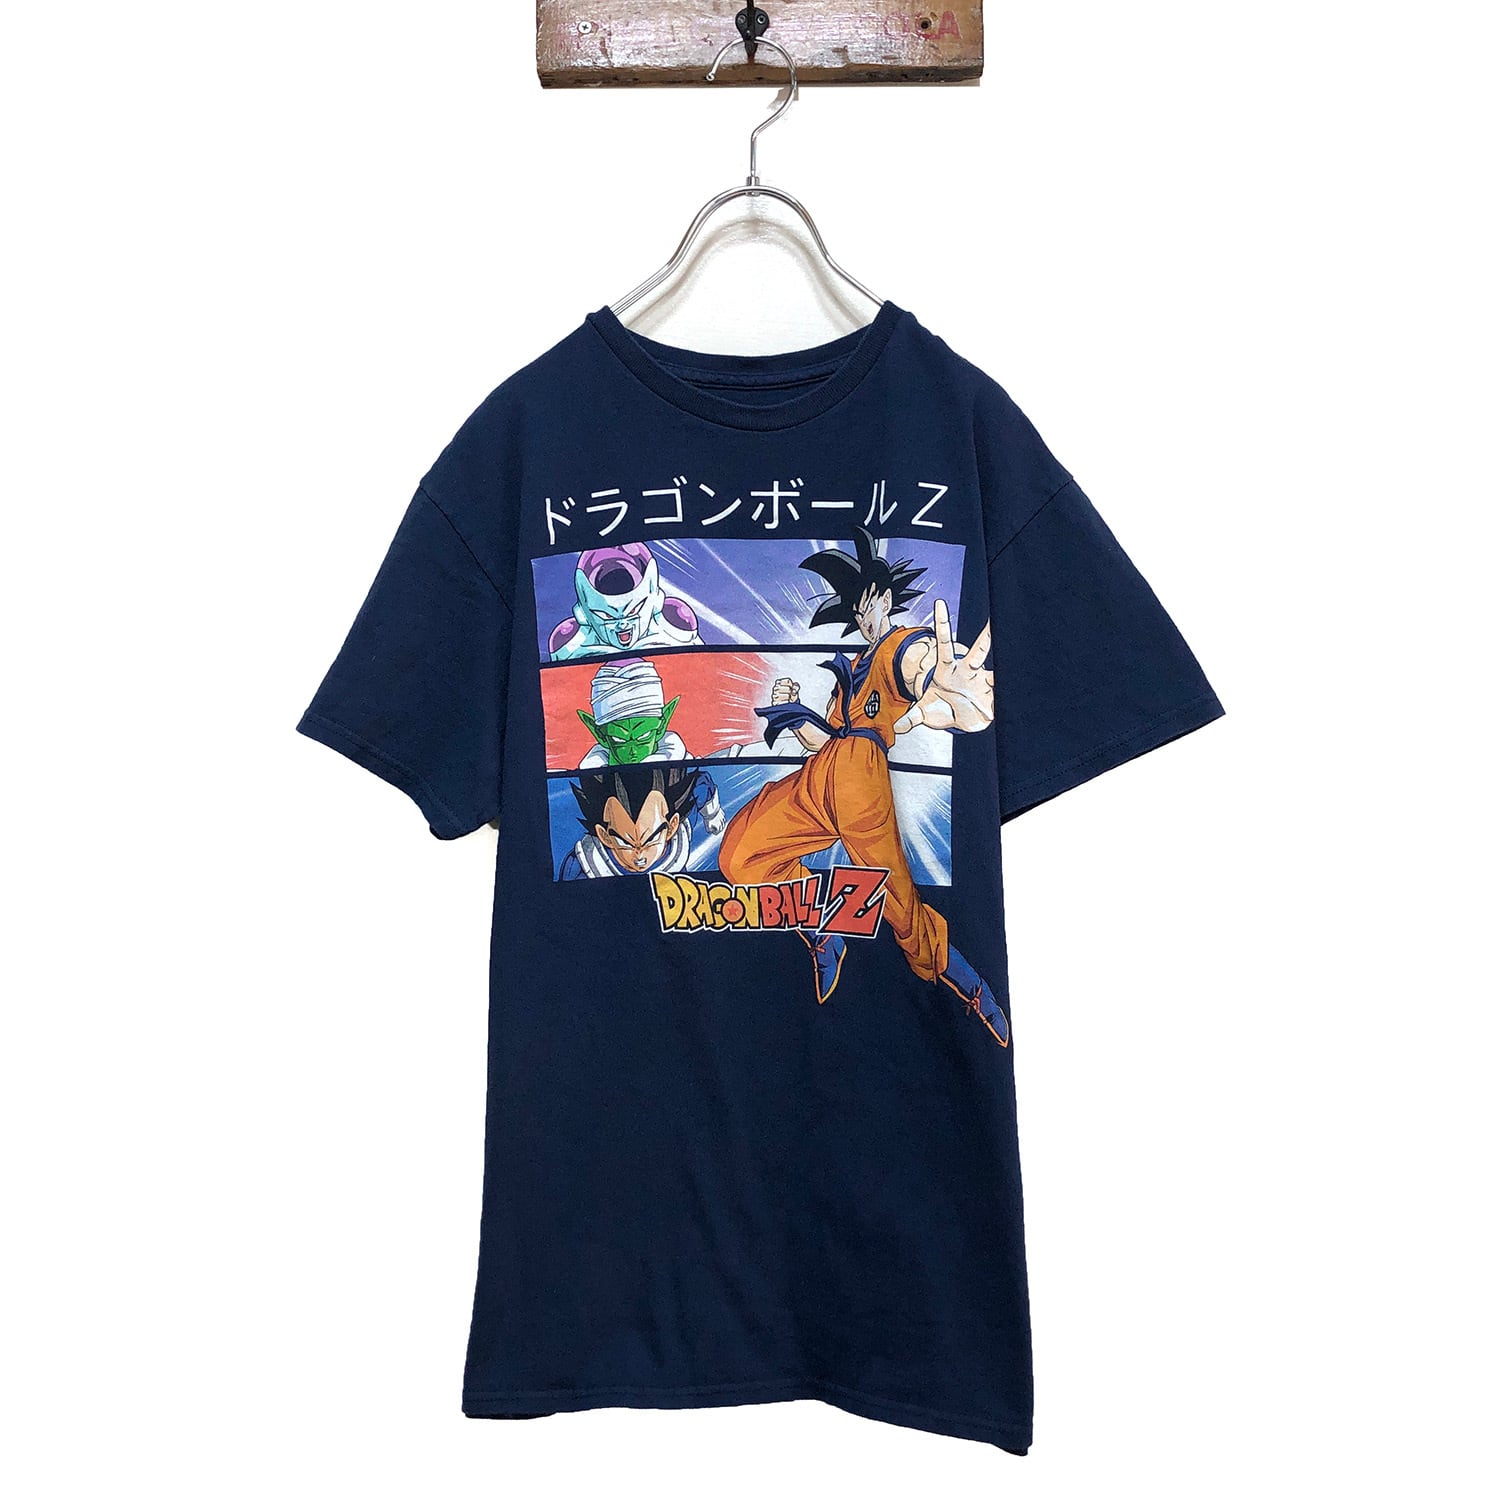 【PSYCHO WORKS】ドラゴンボール フリーザ プリント 半袖Tシャツ